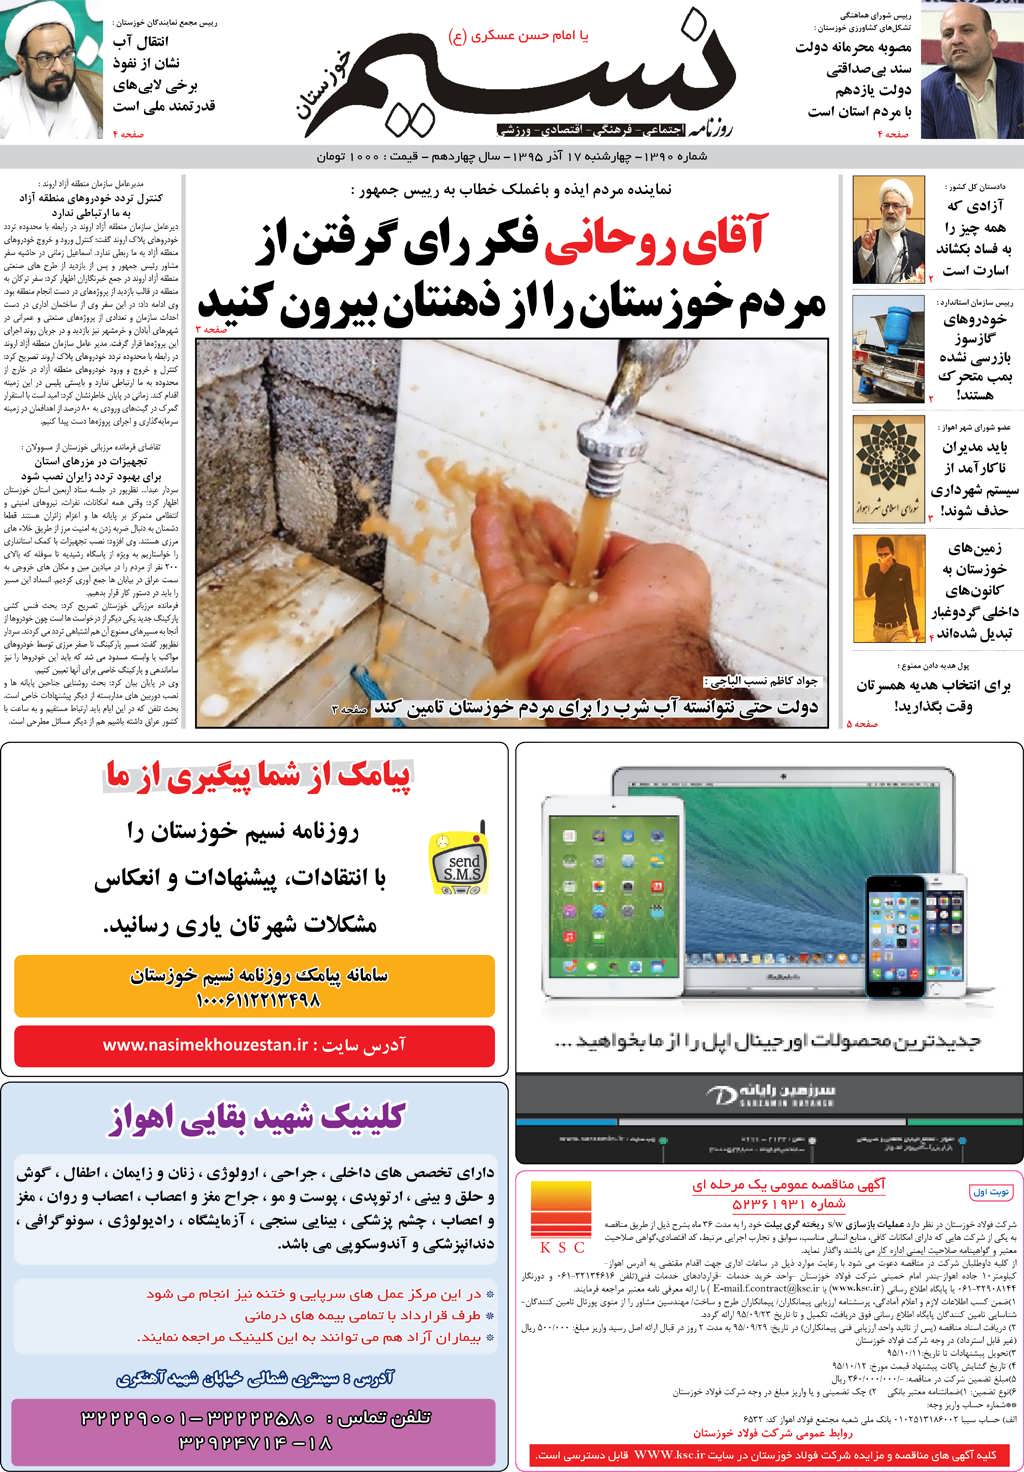 صفحه اصلی روزنامه نسیم شماره 1390